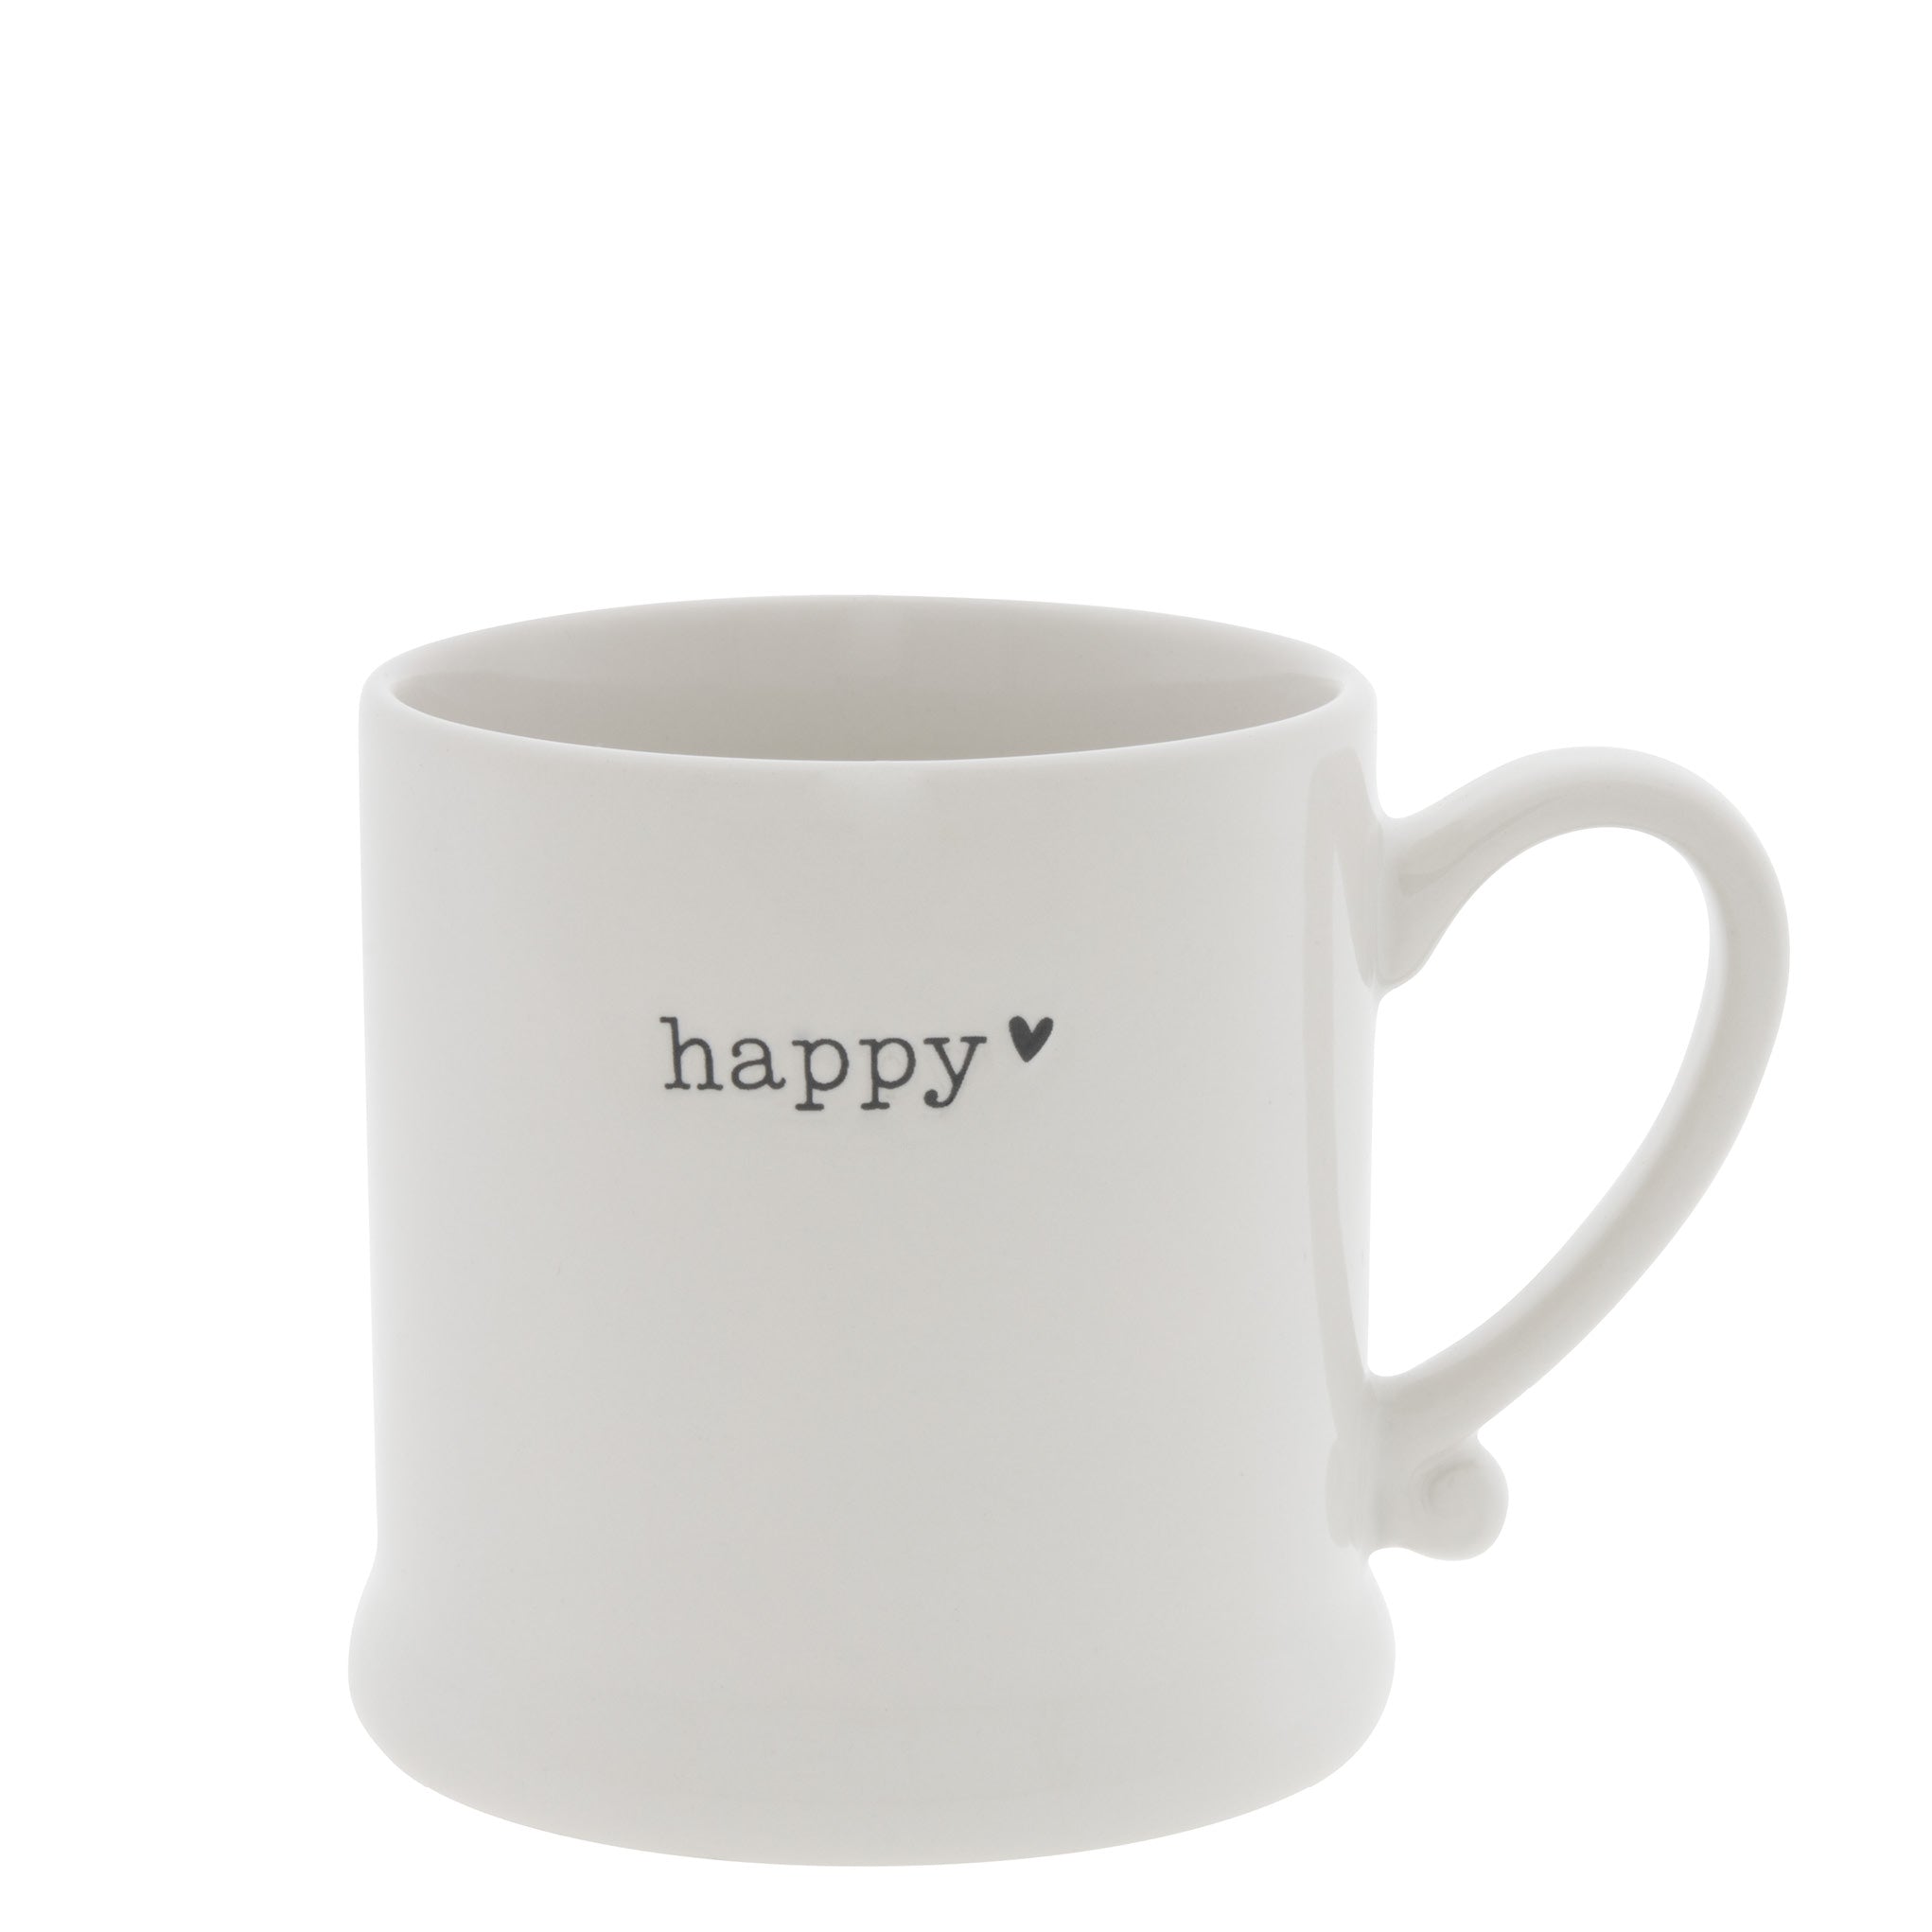 "Happy" Little Mug